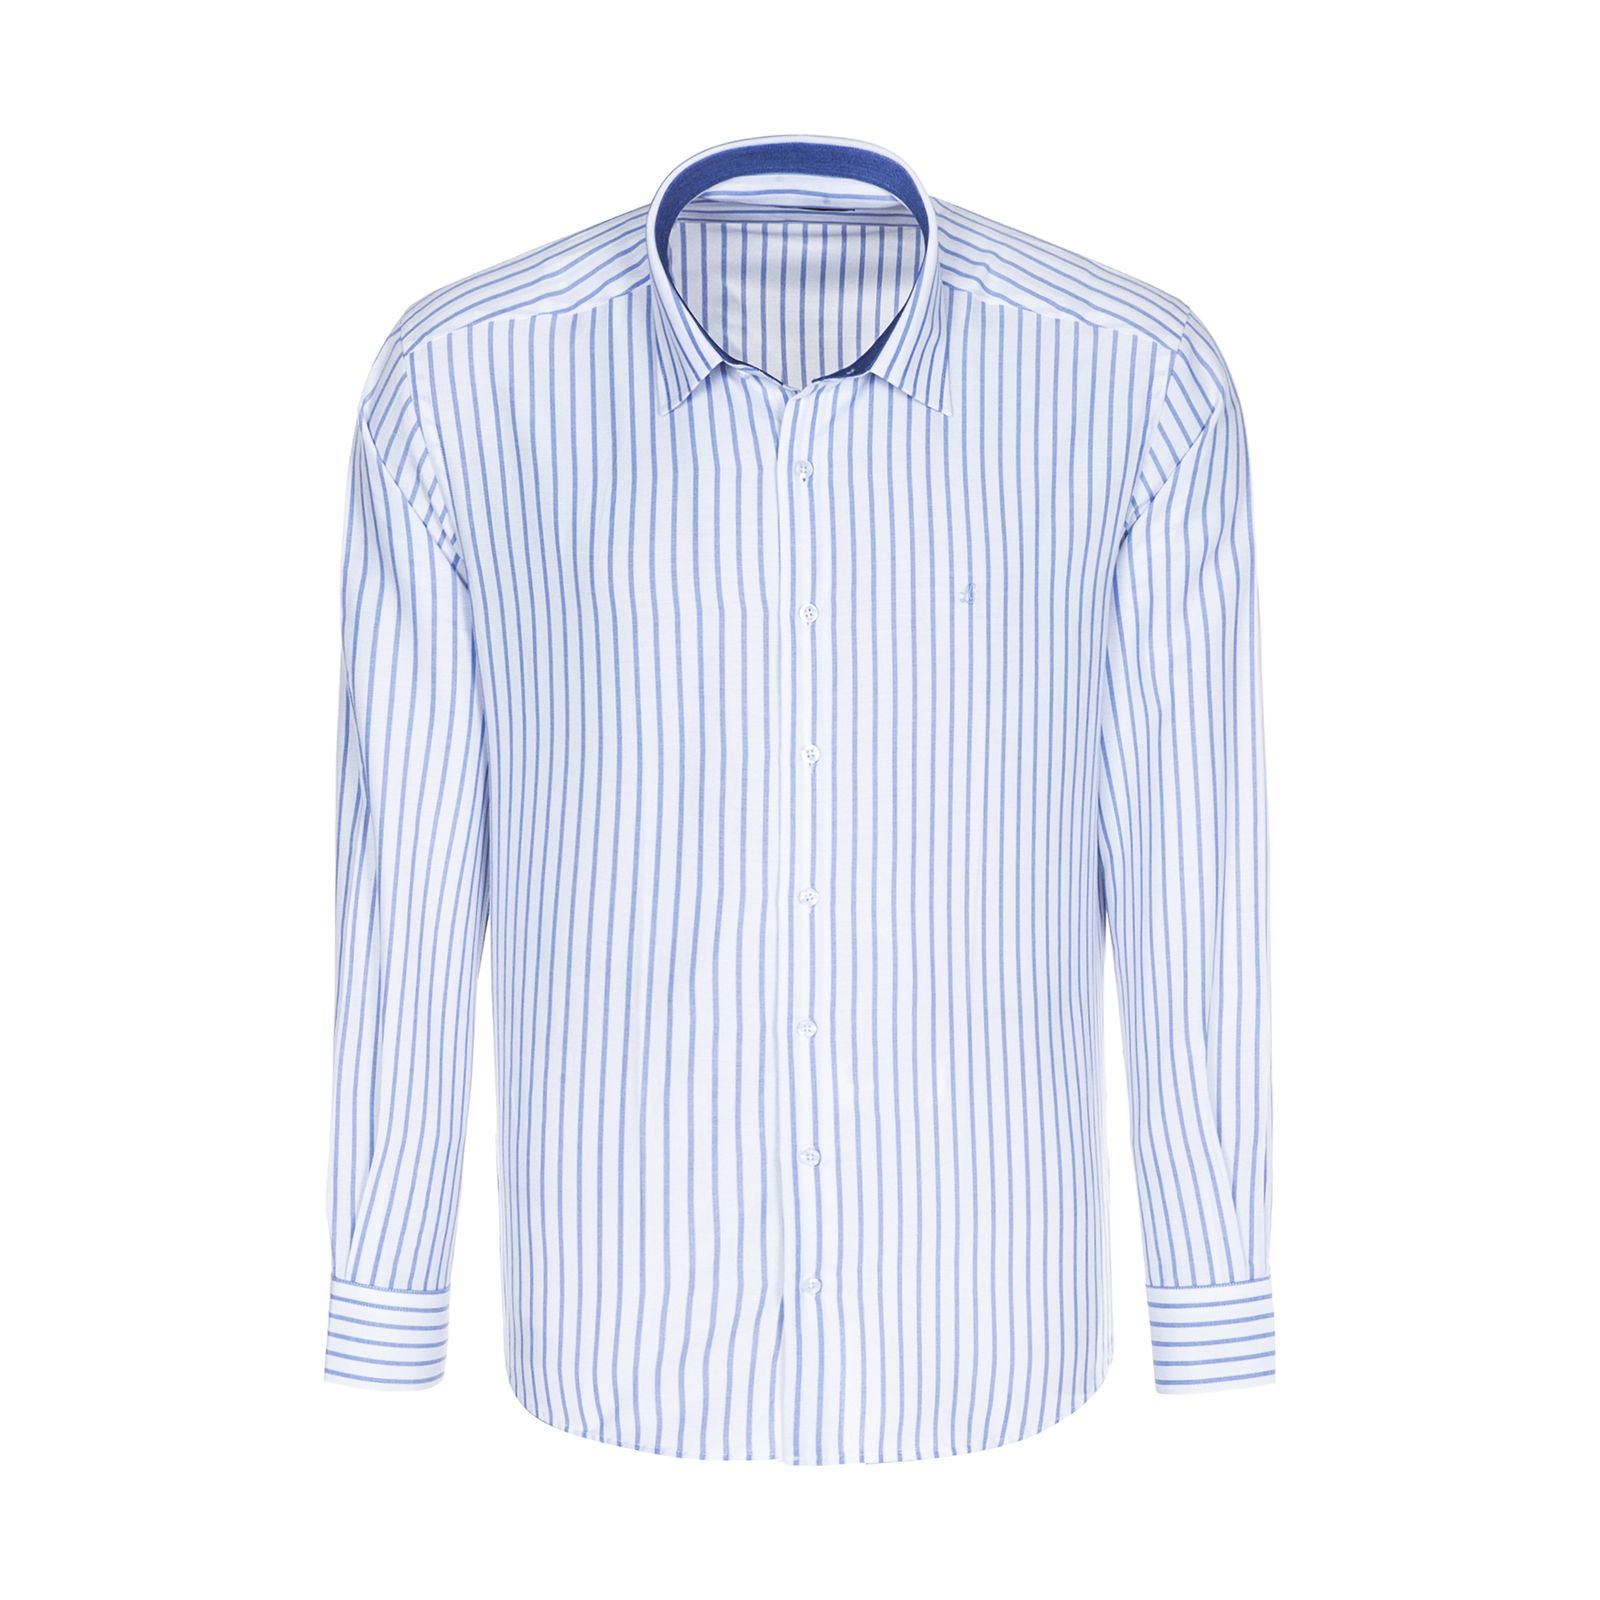 پیراهن آستین بلند مردانه ال سی من مدل 02181293-blue 180 -  - 1